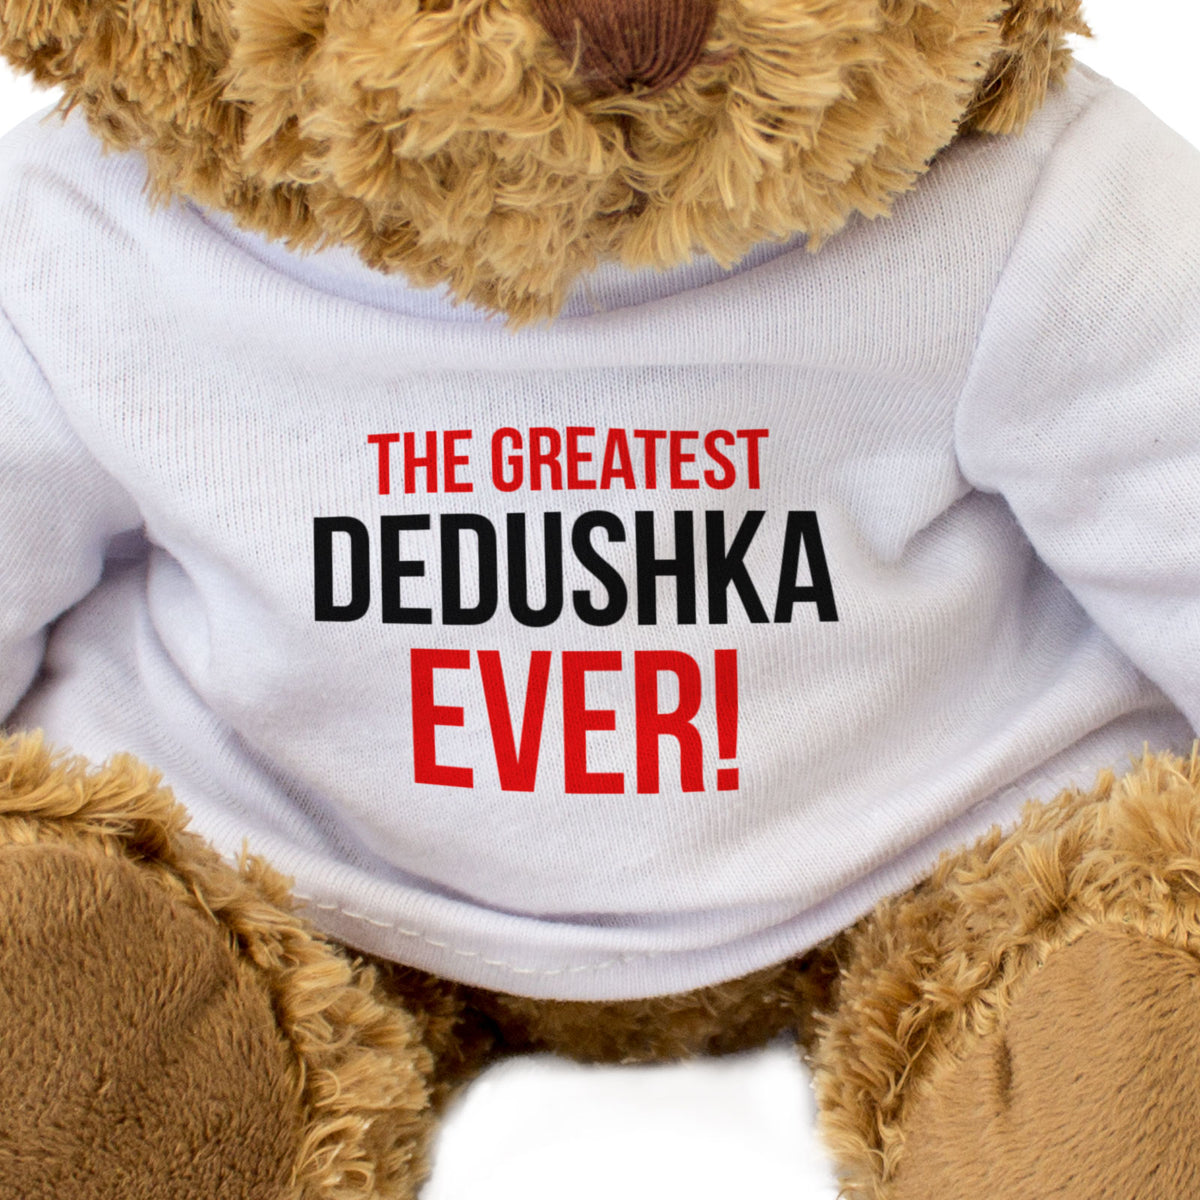 The Greatest Dedushka Ever - Teddy Bear